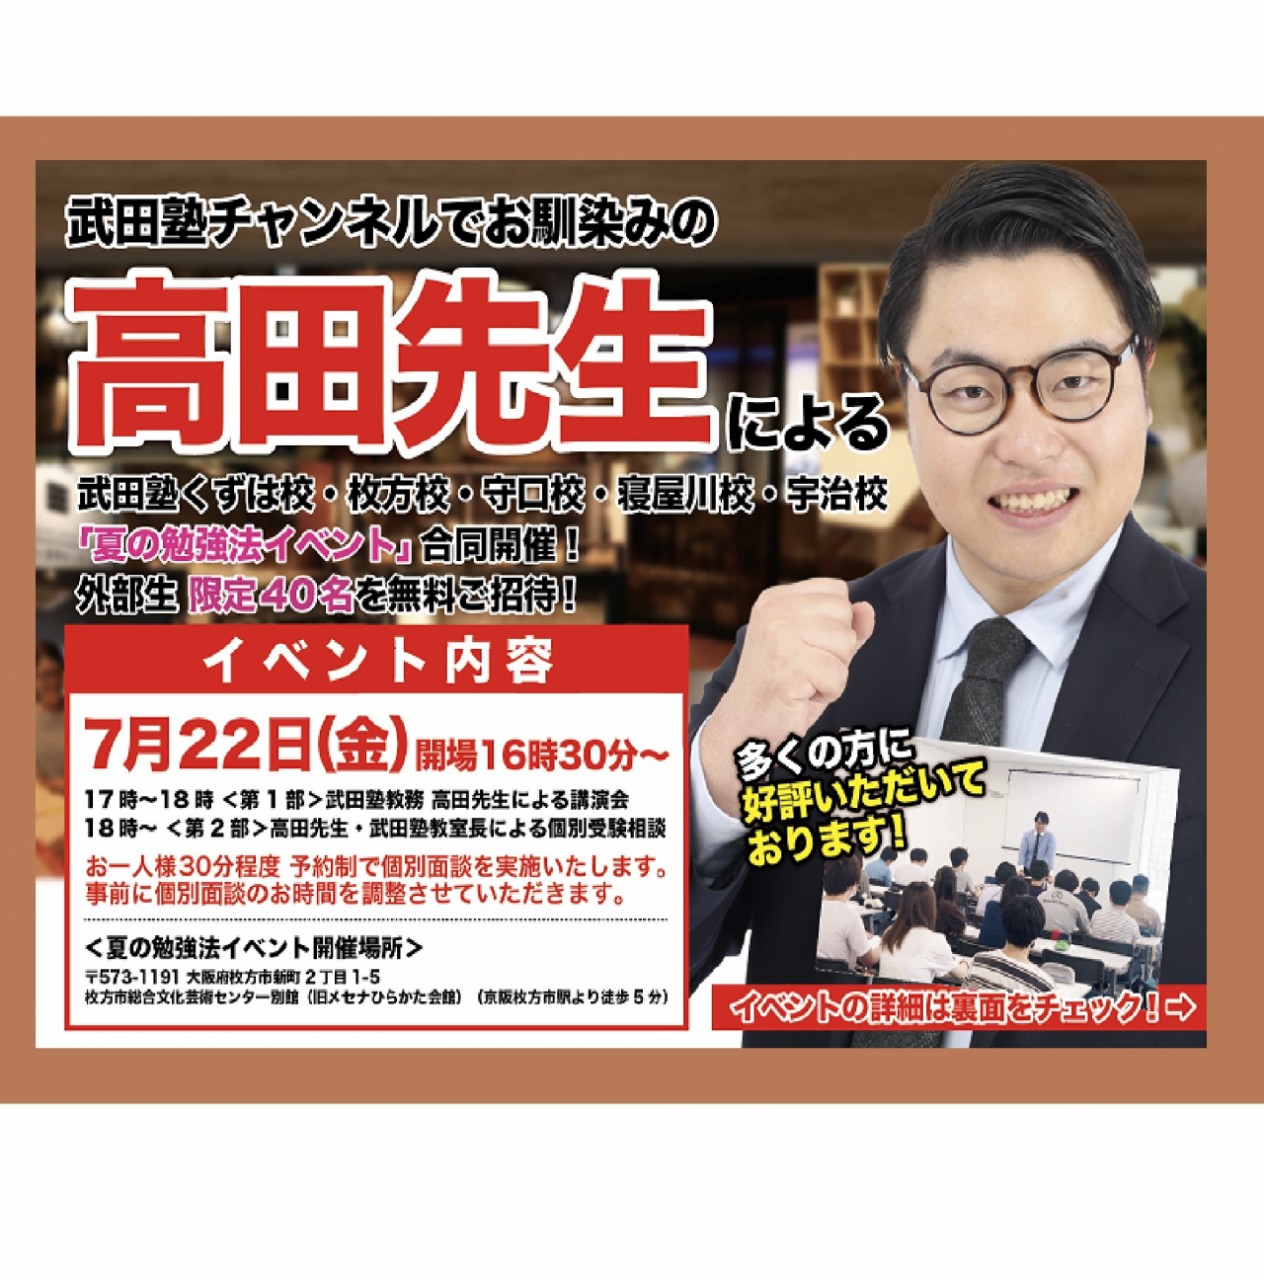 高田先生による「夏の勉強法イベント」を開催します！